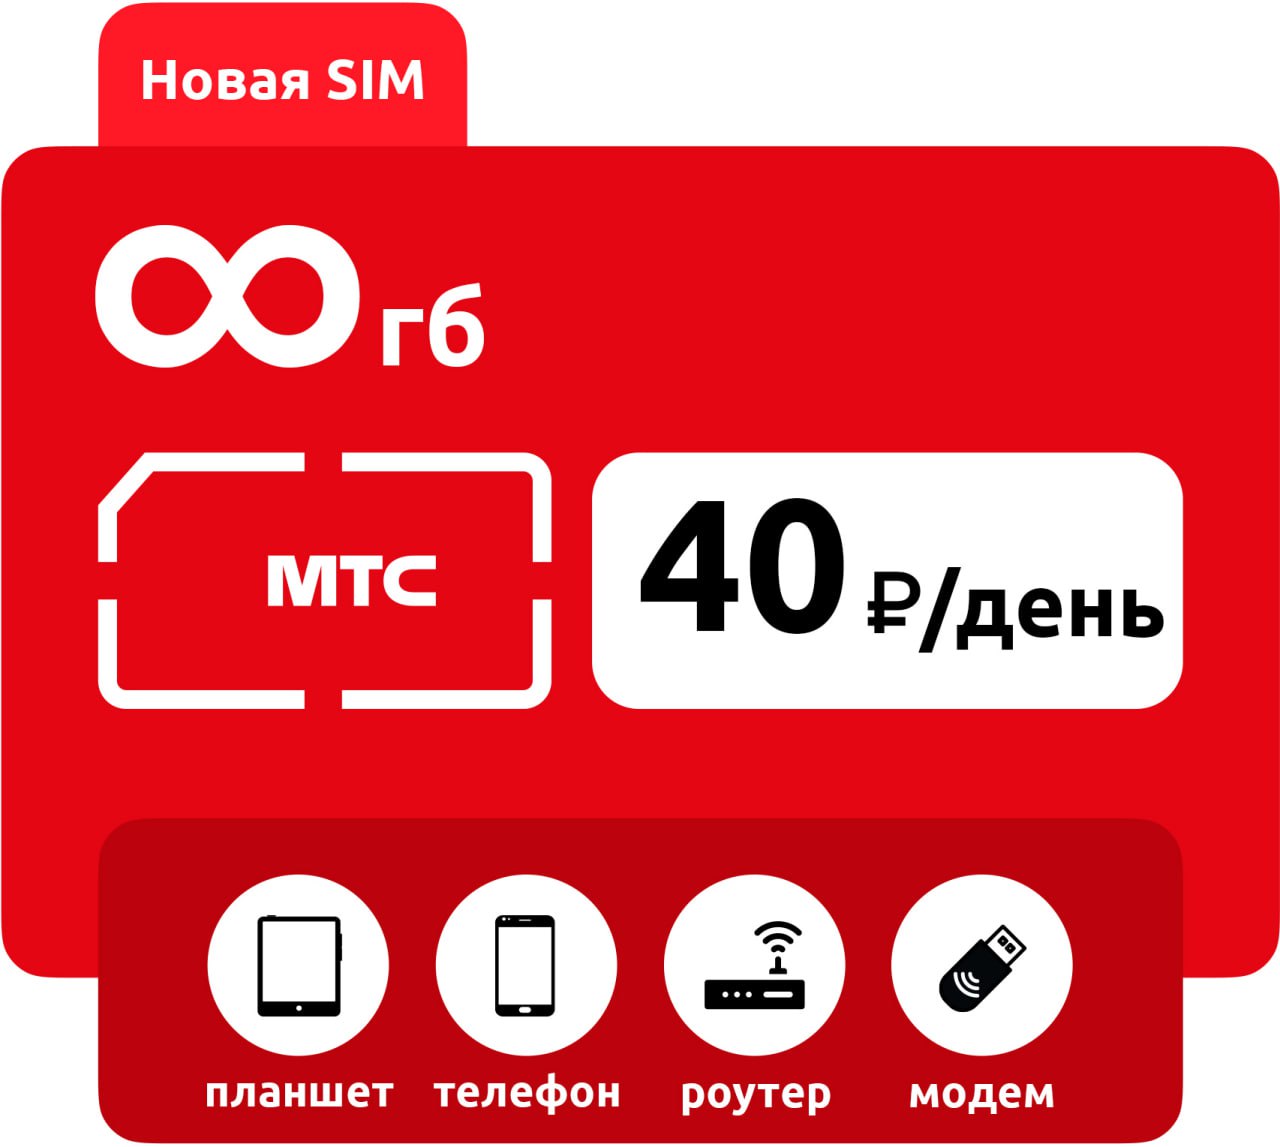 SIM-карта МТС безлимит 40р/день фото